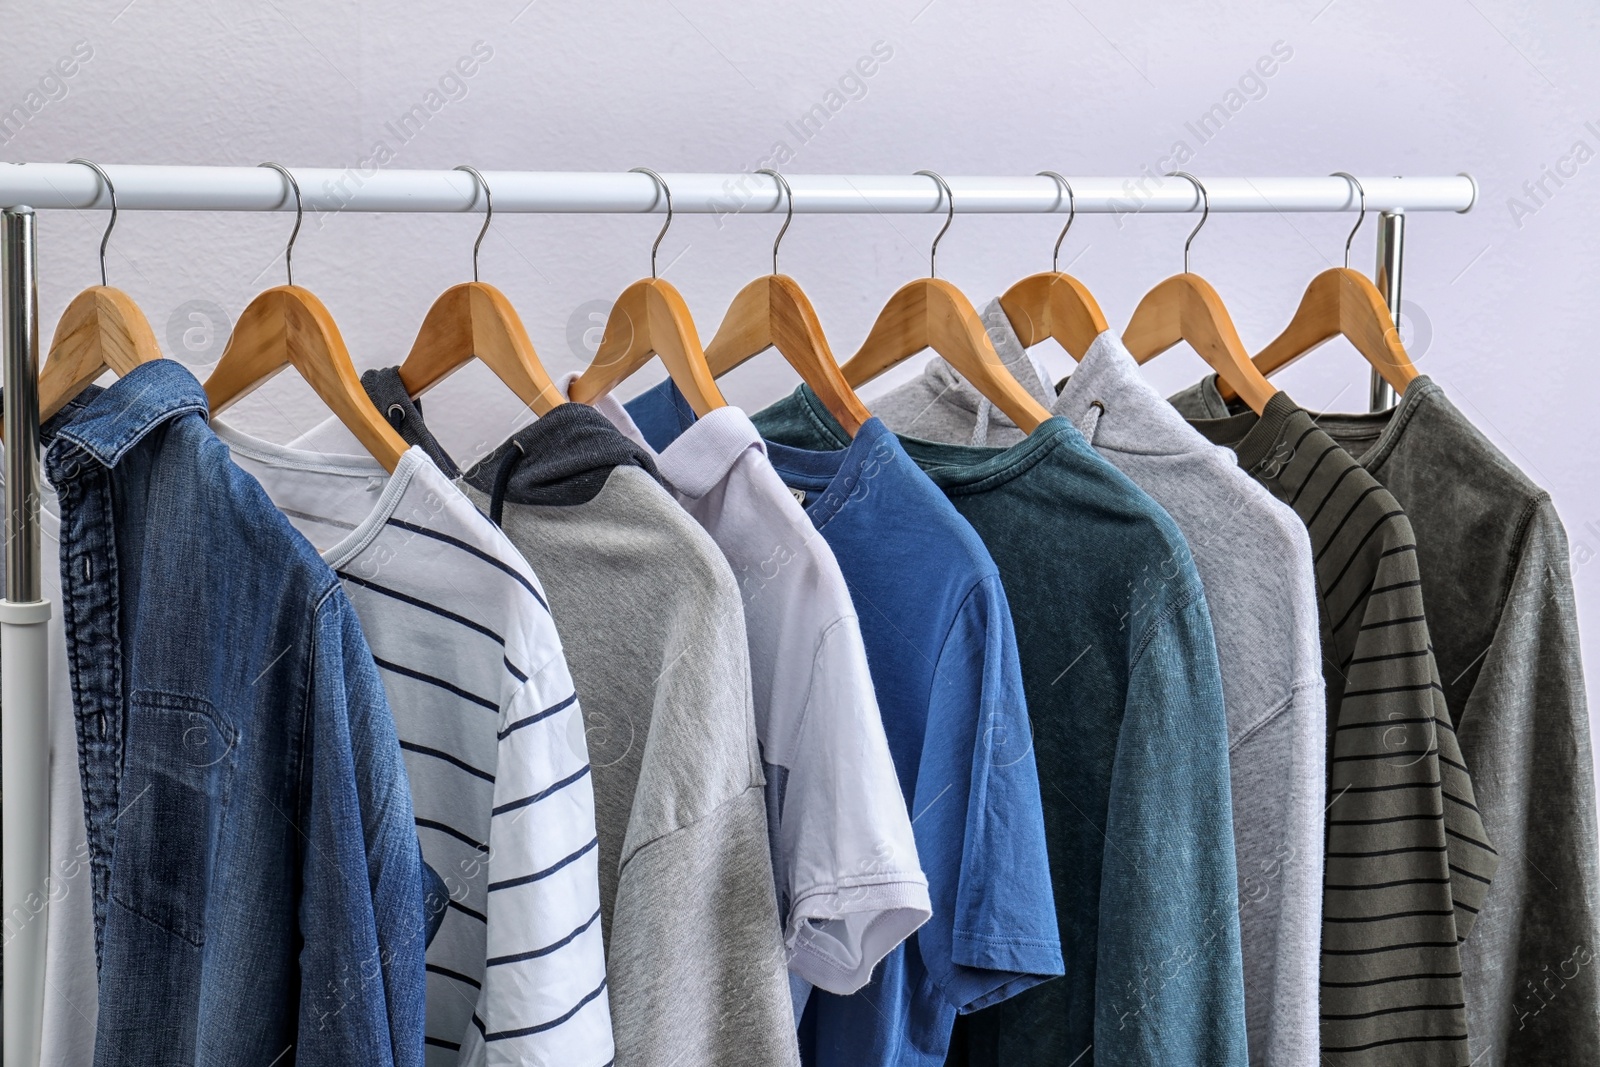 Photo of Stylish clothes hanging on wardrobe rack against light background